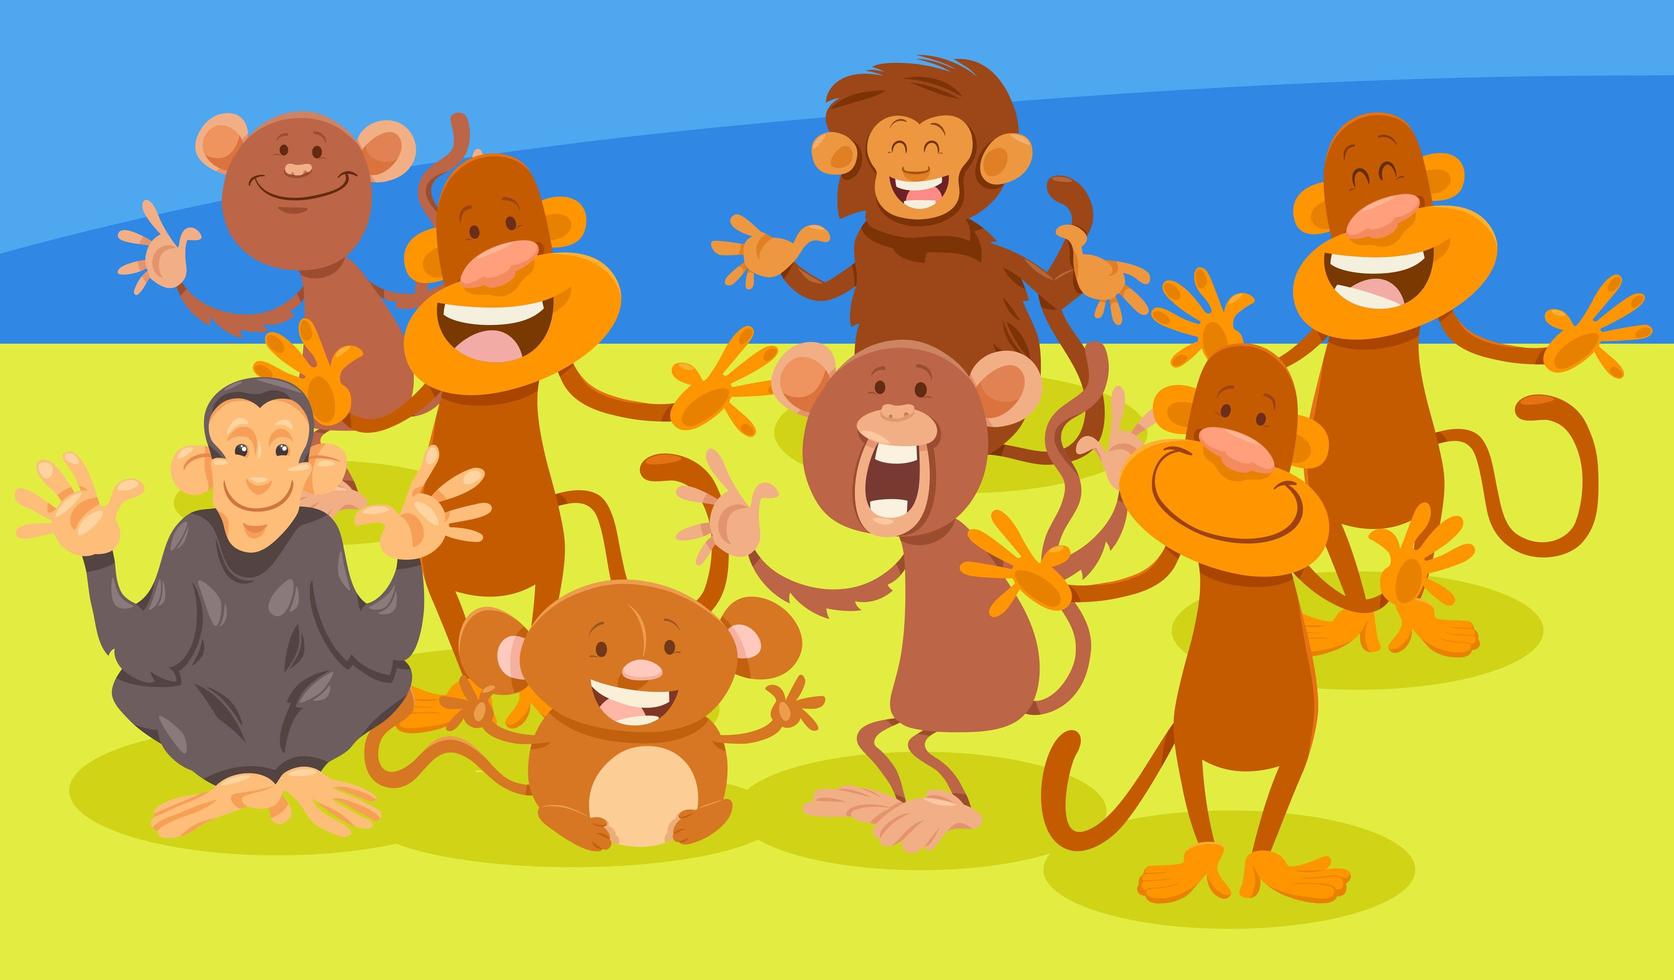 grupo de personajes de animales de monos de dibujos animados vector